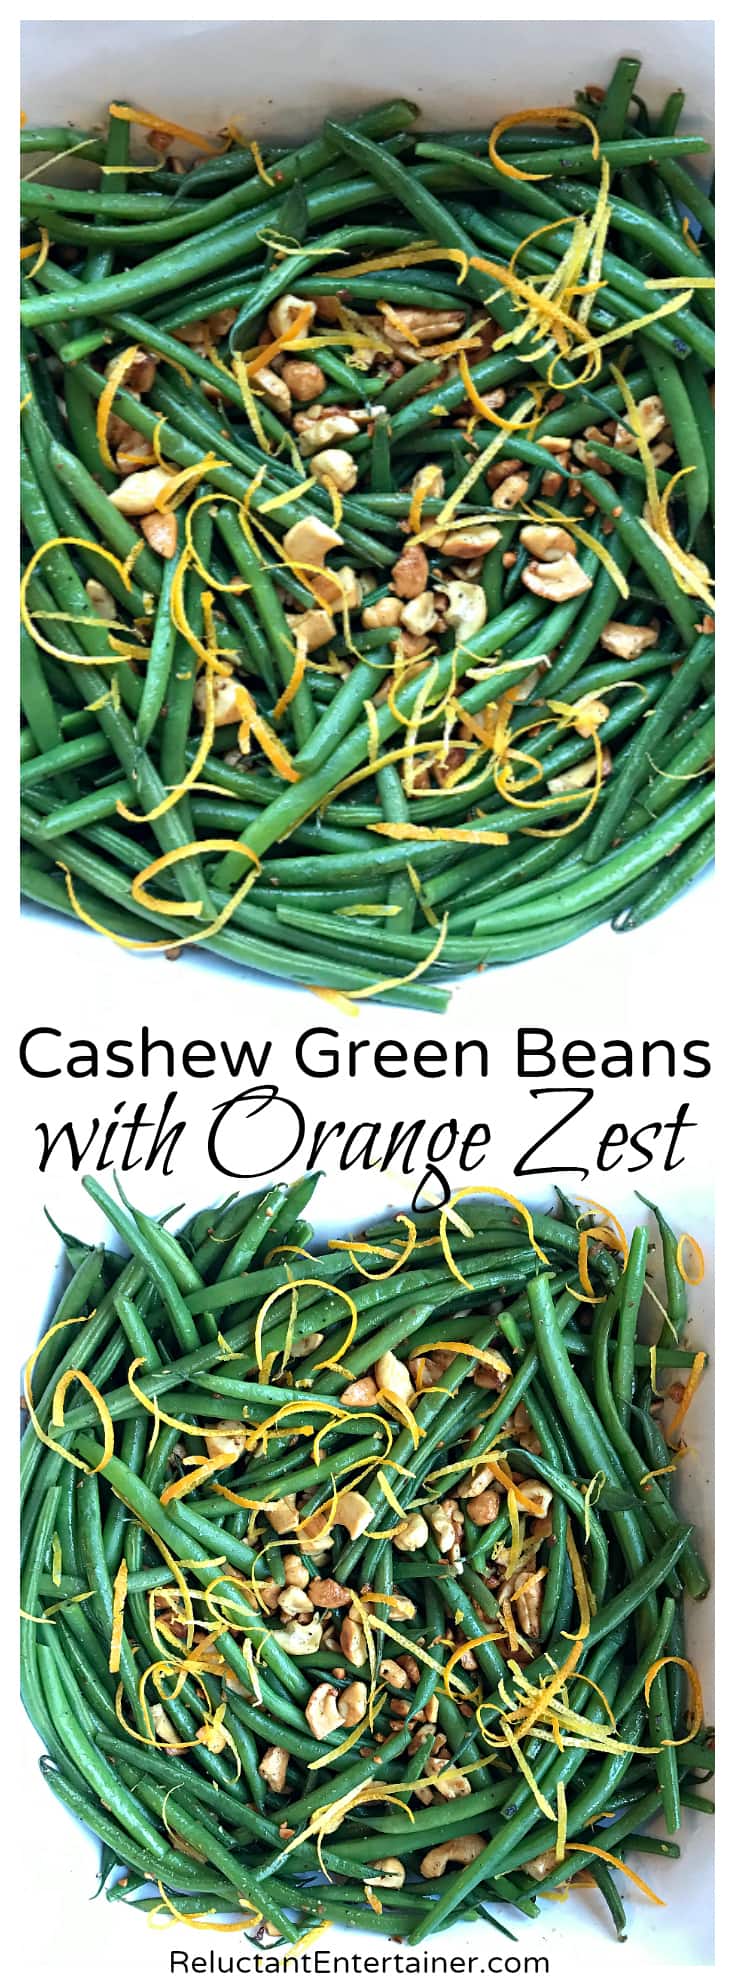 Cashew Green Beans with Orange Zest